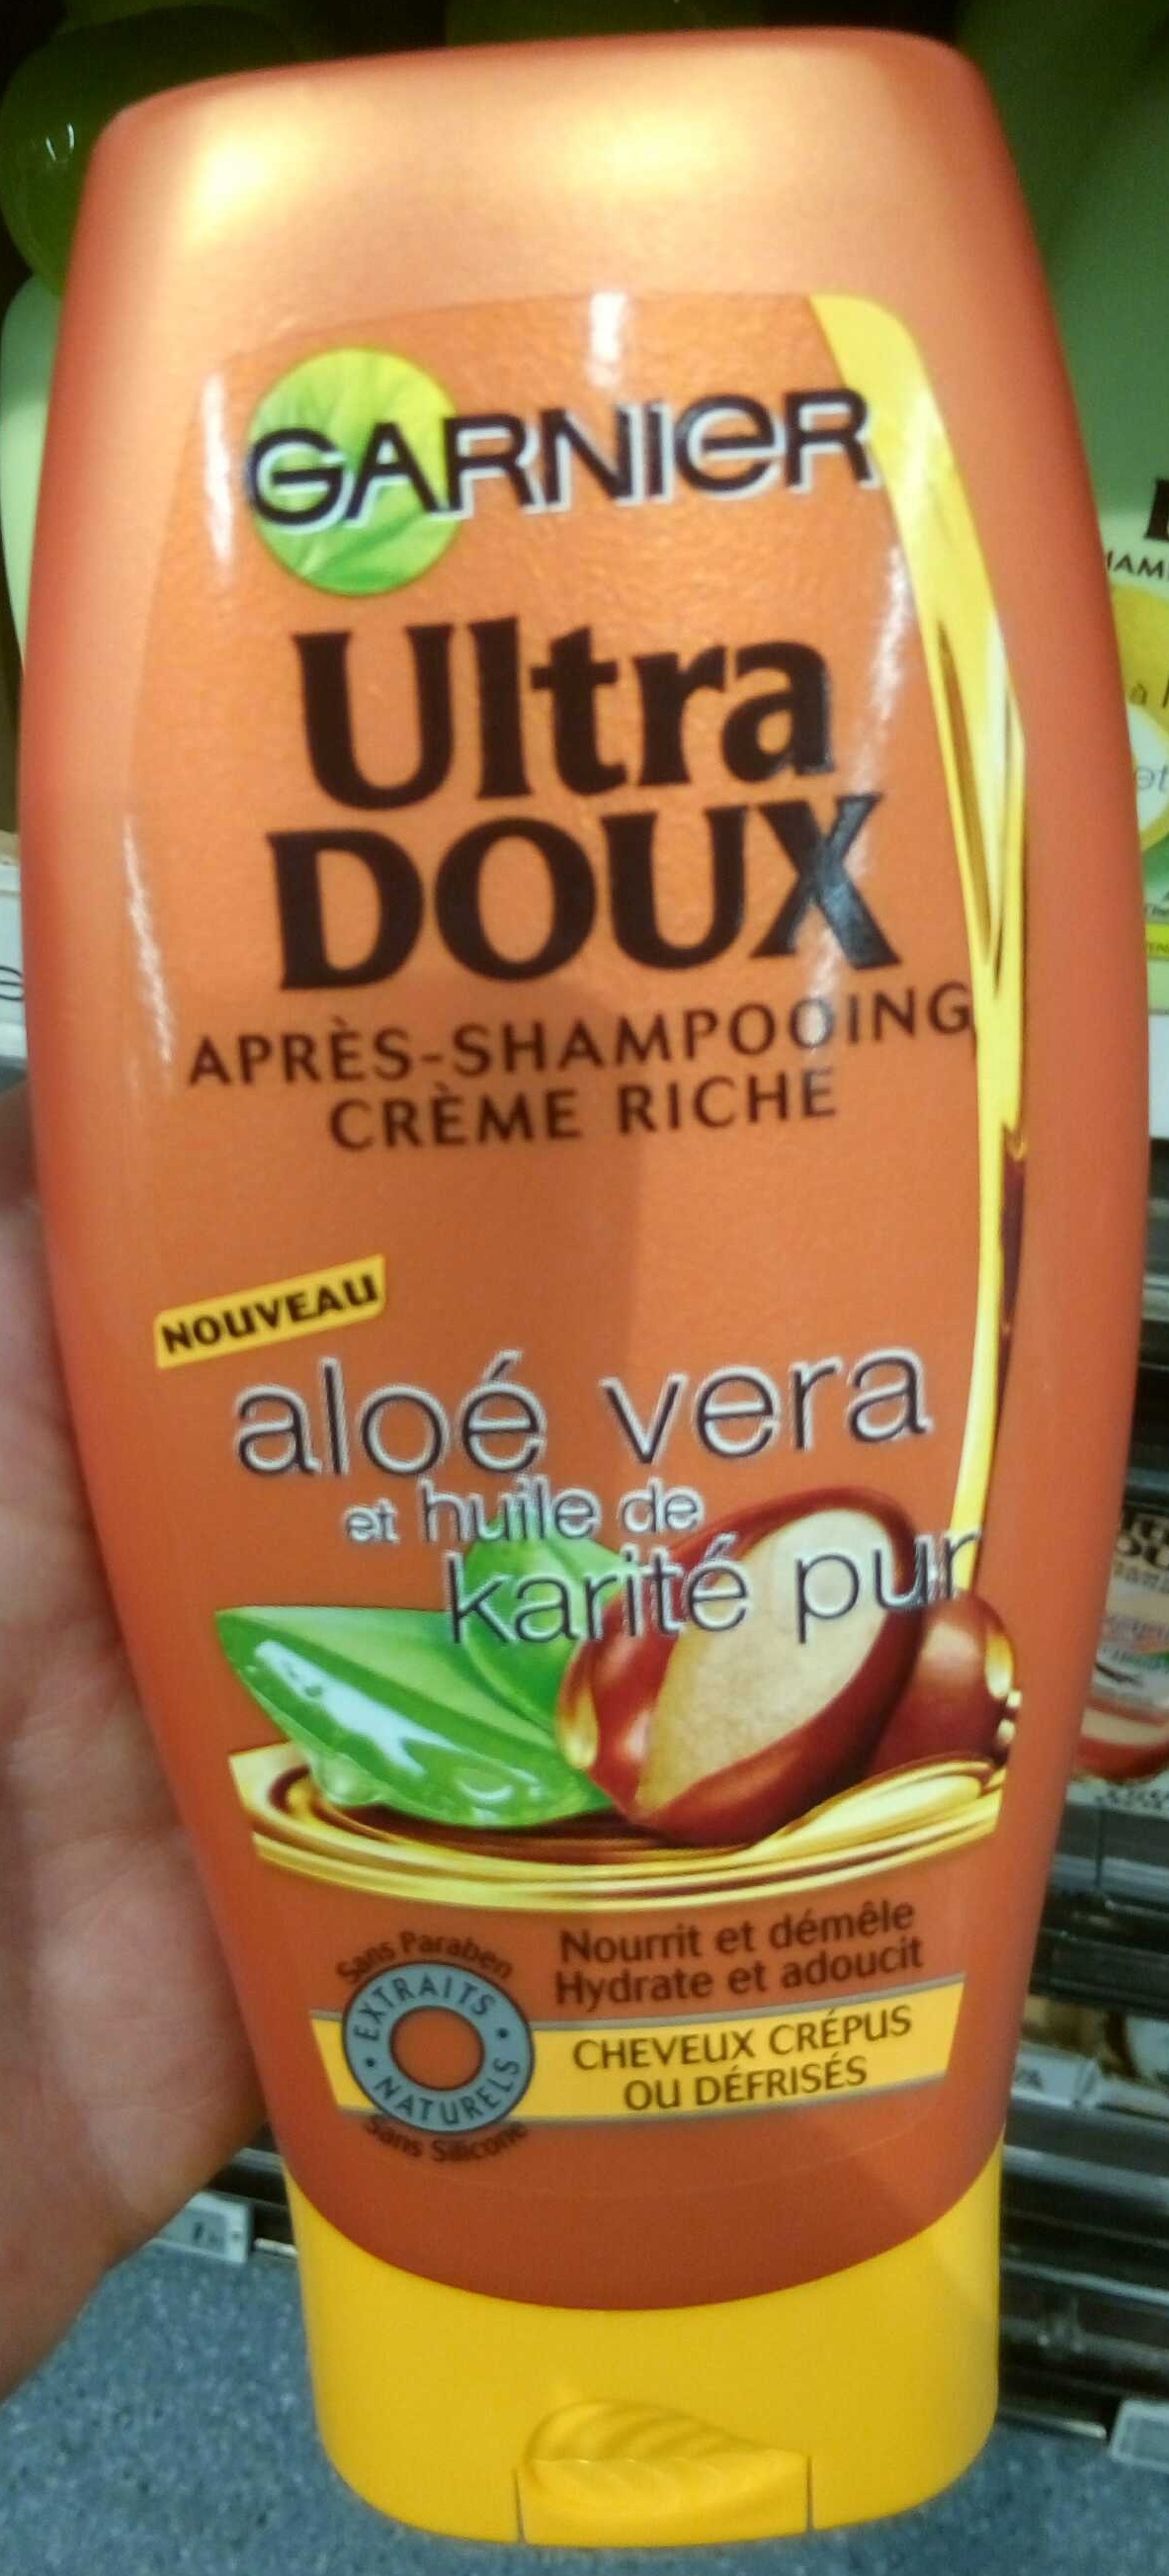 Ultra Doux Après-shampooing crème riche Aloé vera et huile de karité pur - Produkt - fr